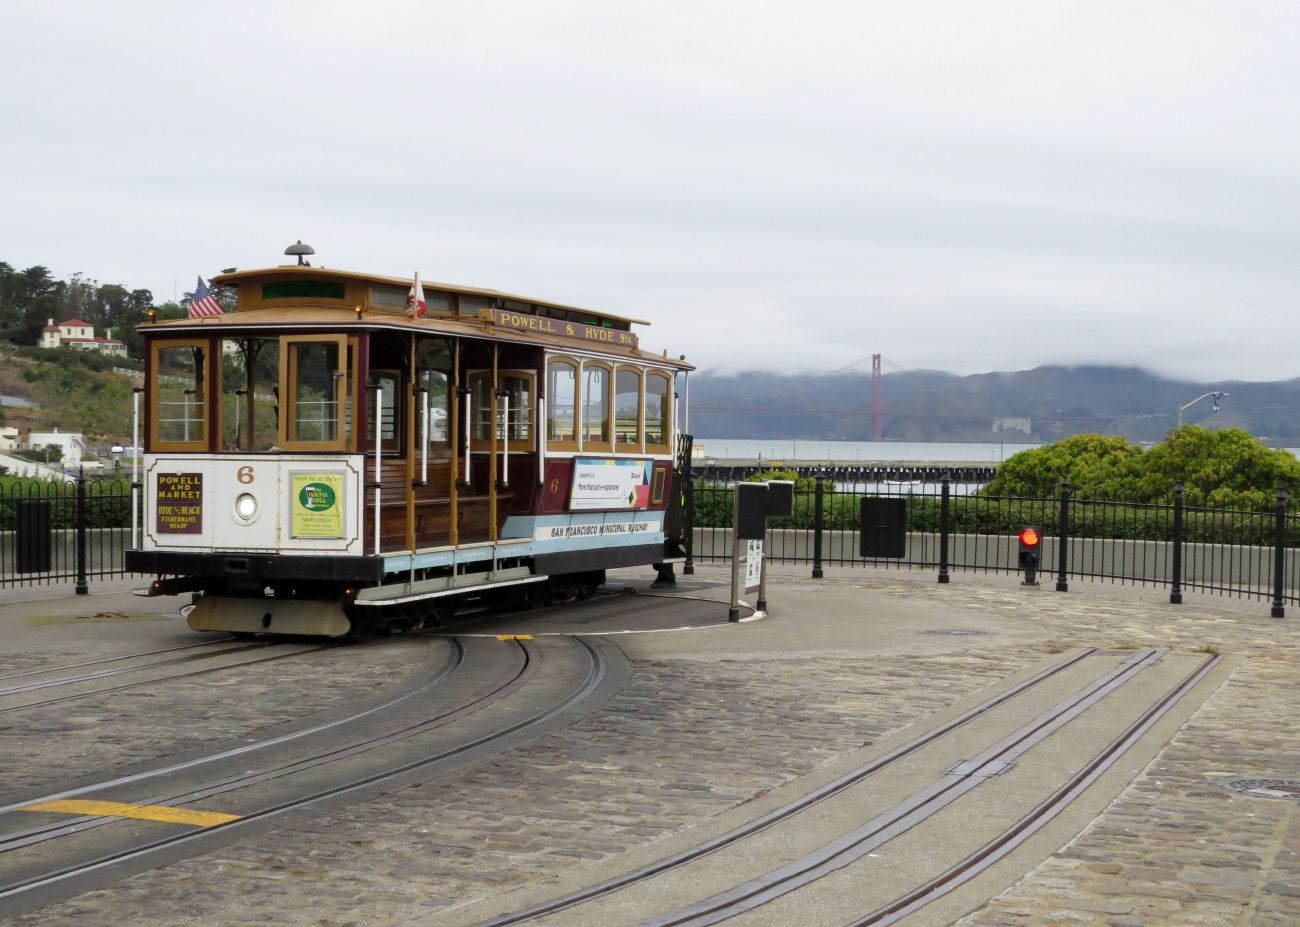 Сан-Франциско, область залива, Muni cable car № 6; Сан-Франциско, область залива — Линии и инфраструктура кабельного трамвая